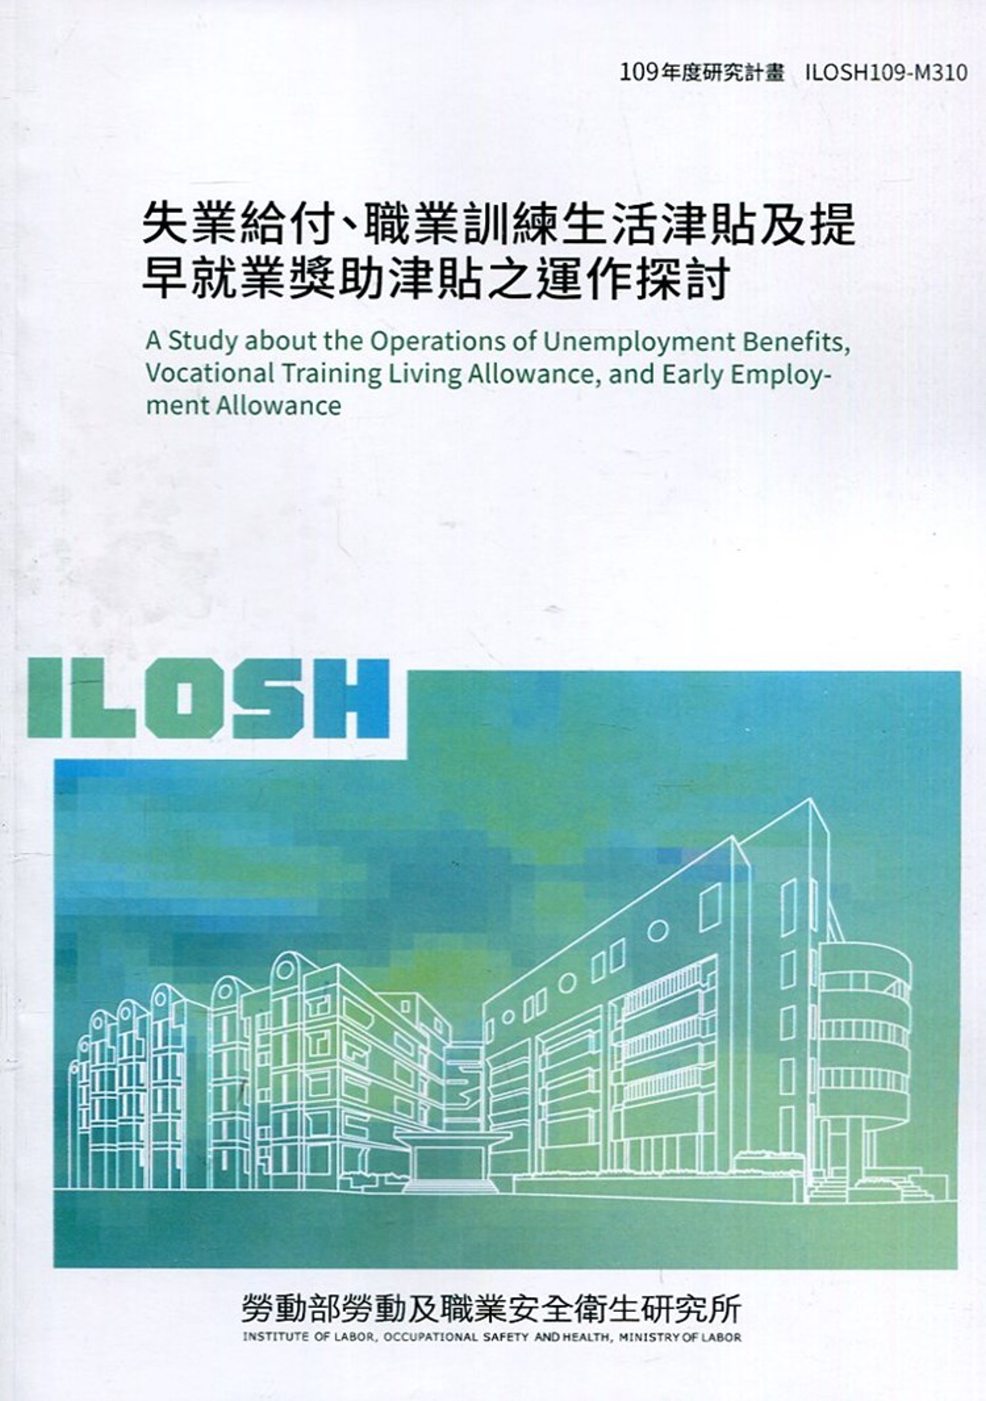 失業給付、職業訓練生活津貼及提早就業獎助津貼之運作探討 ILOSH109-M310